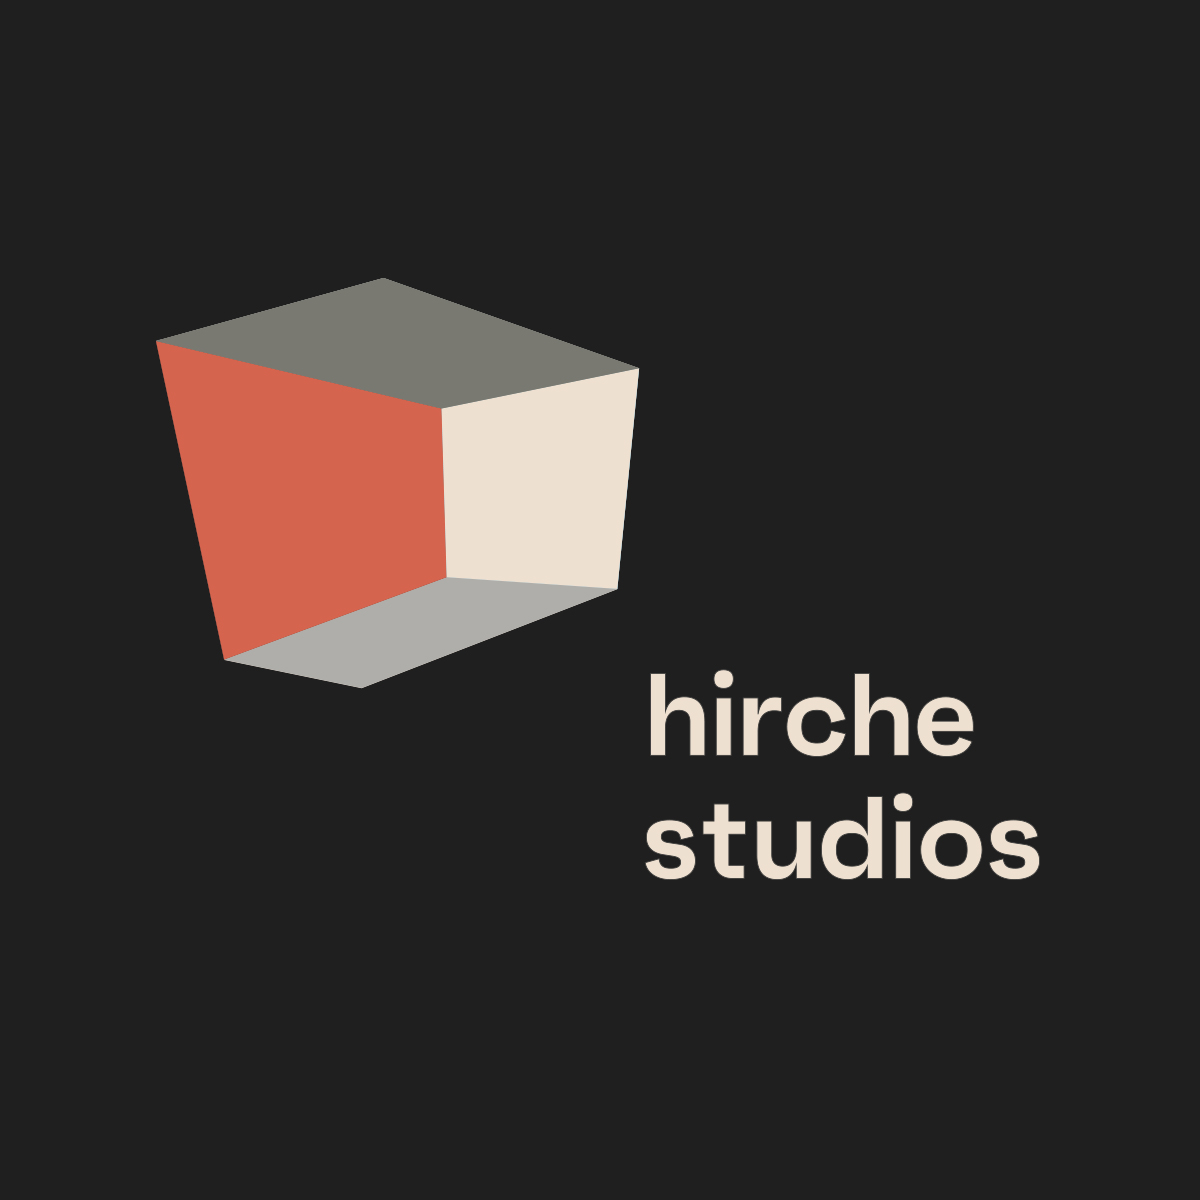 hirchestudio_logo_final